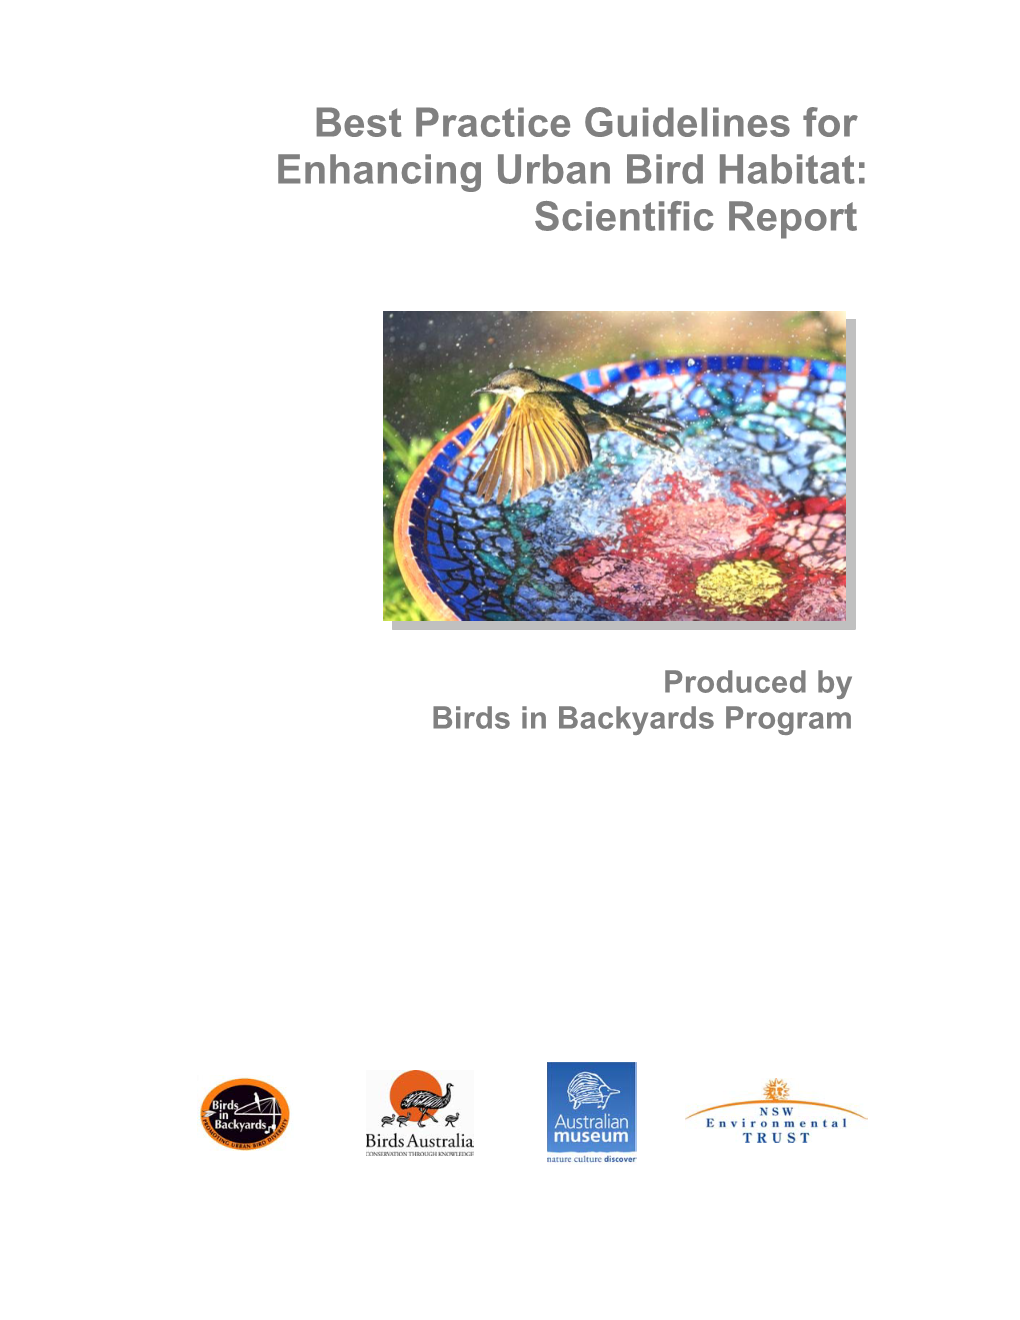 Best Practice Guidelines for Enhancing Urban Bird Habitat: Scientific Report